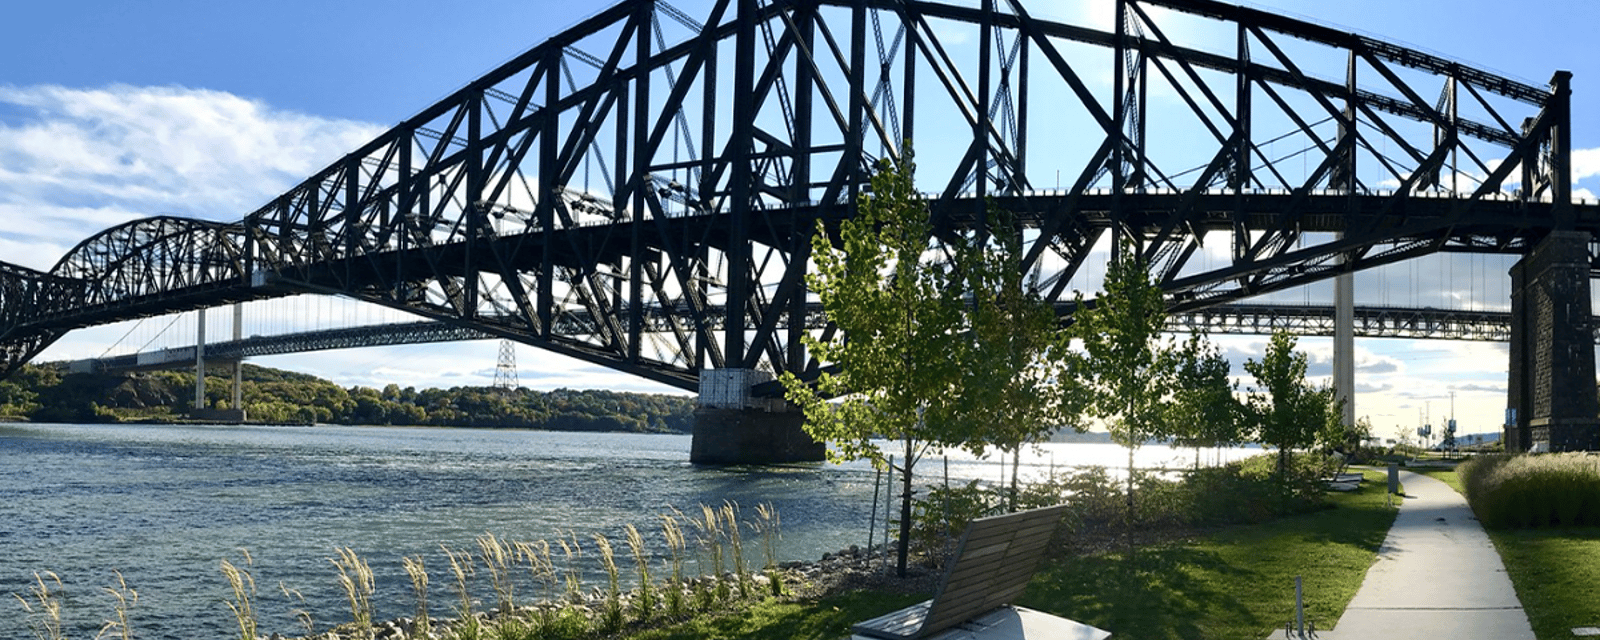 Cauchemars en vue sur le pont de Québec jusqu'à la fin de l'année